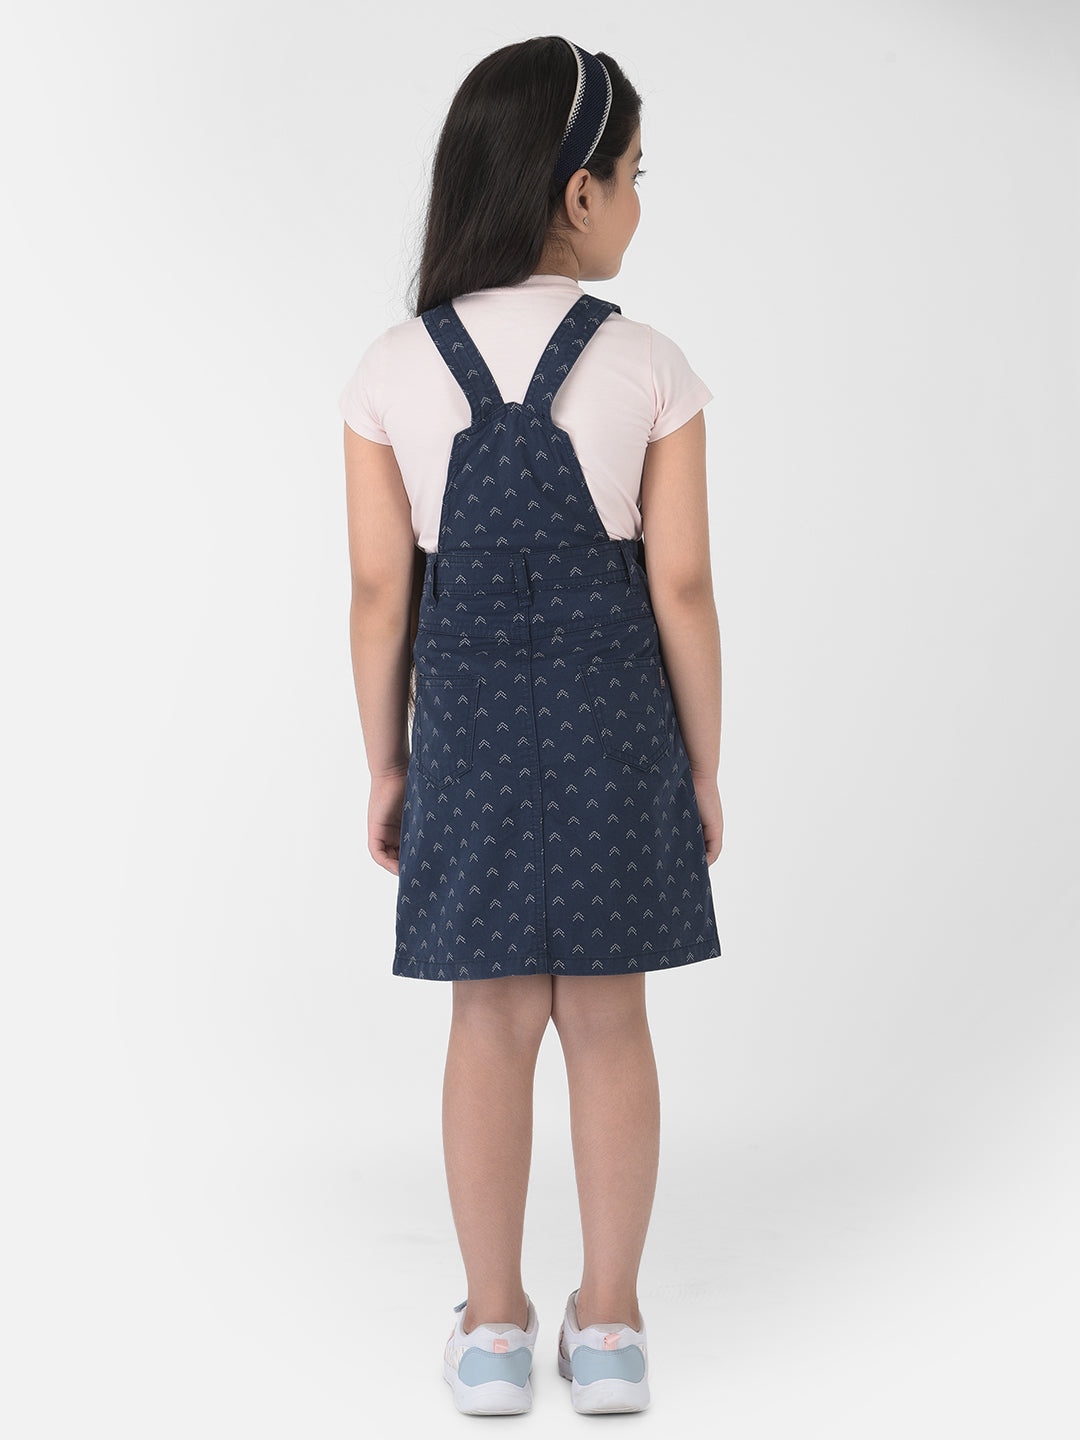 Navy Blue Pinafore Dress - Girls Dress